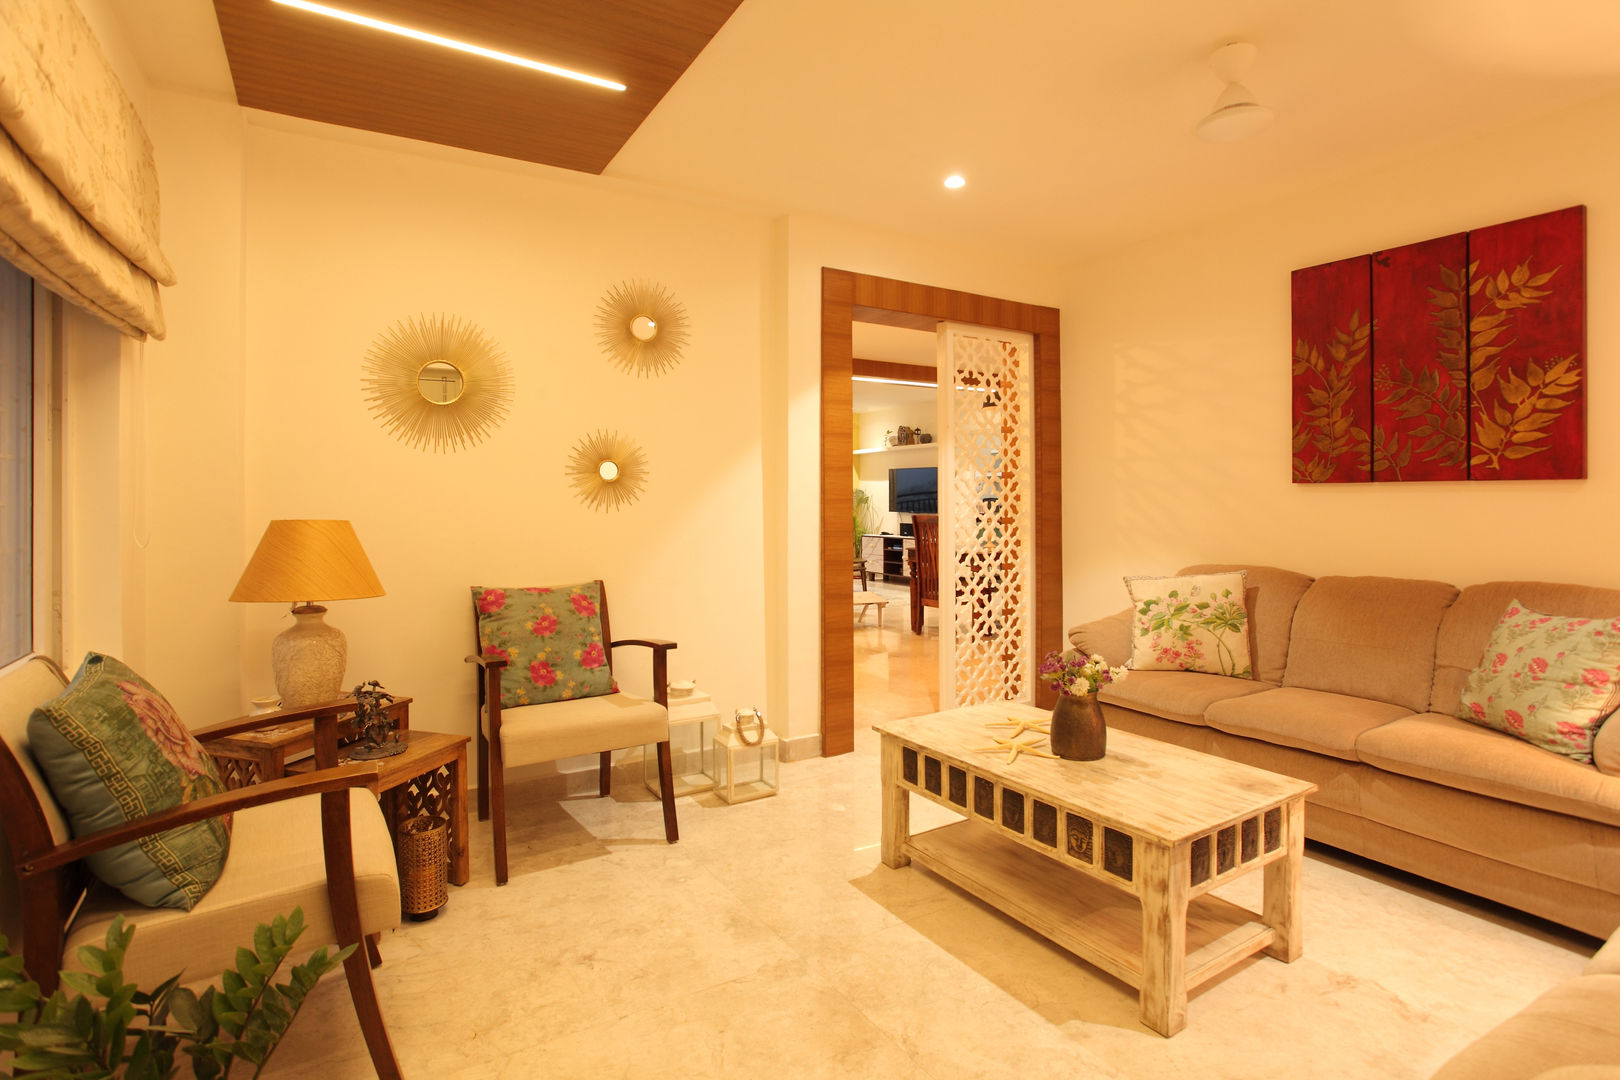 Apartment, Hyderabad, Saloni Narayankar Interiors Saloni Narayankar Interiors Salones rústicos rústicos Decoración y accesorios